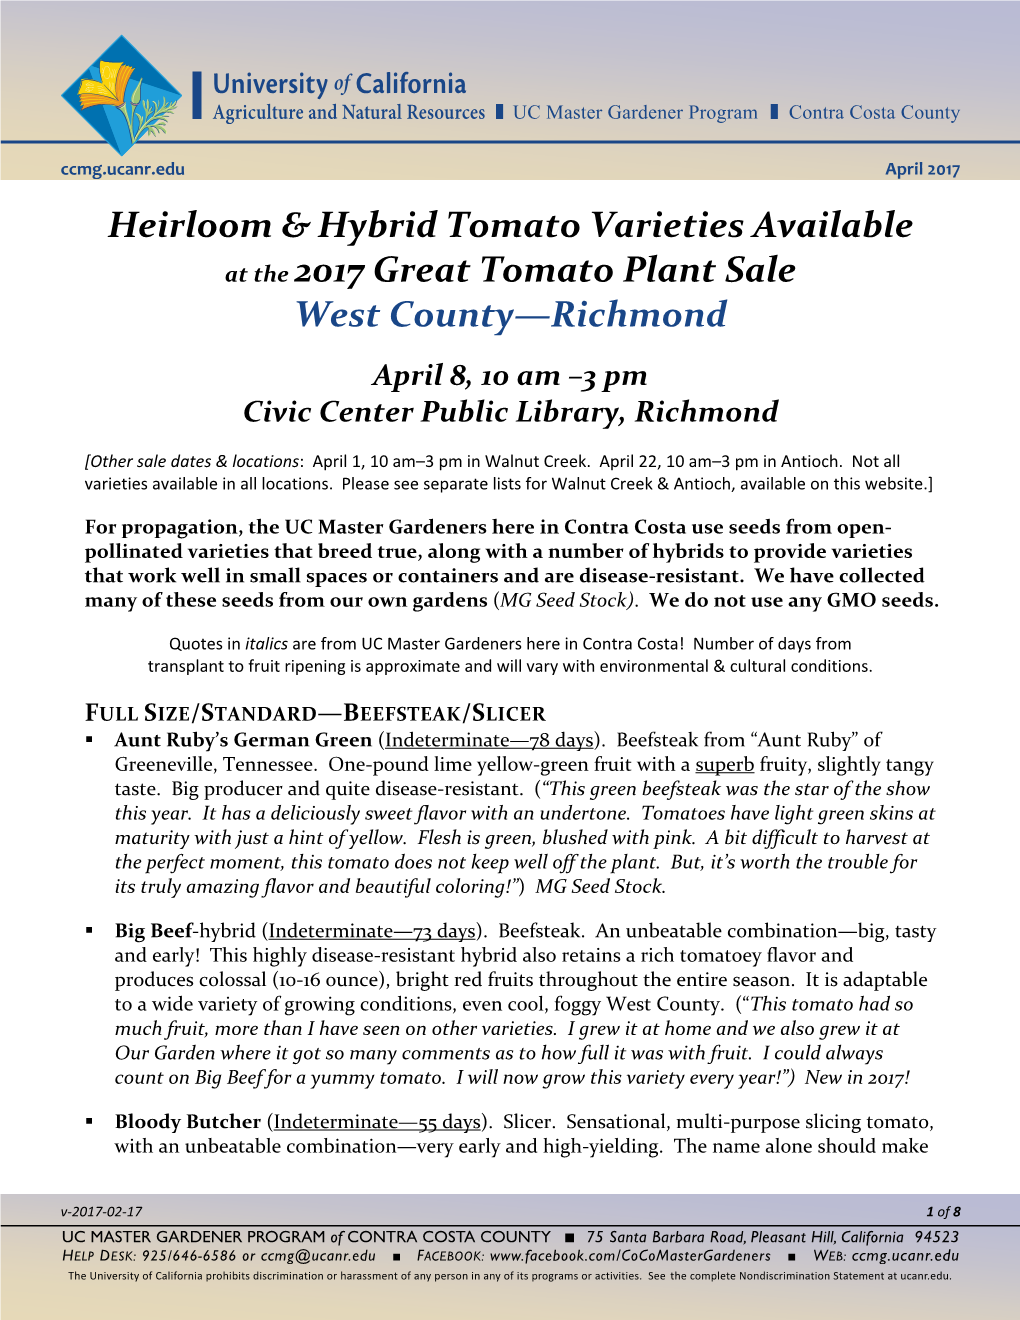 2017 Heirloom & Hybrid Tomato Varieties Available--Richmond